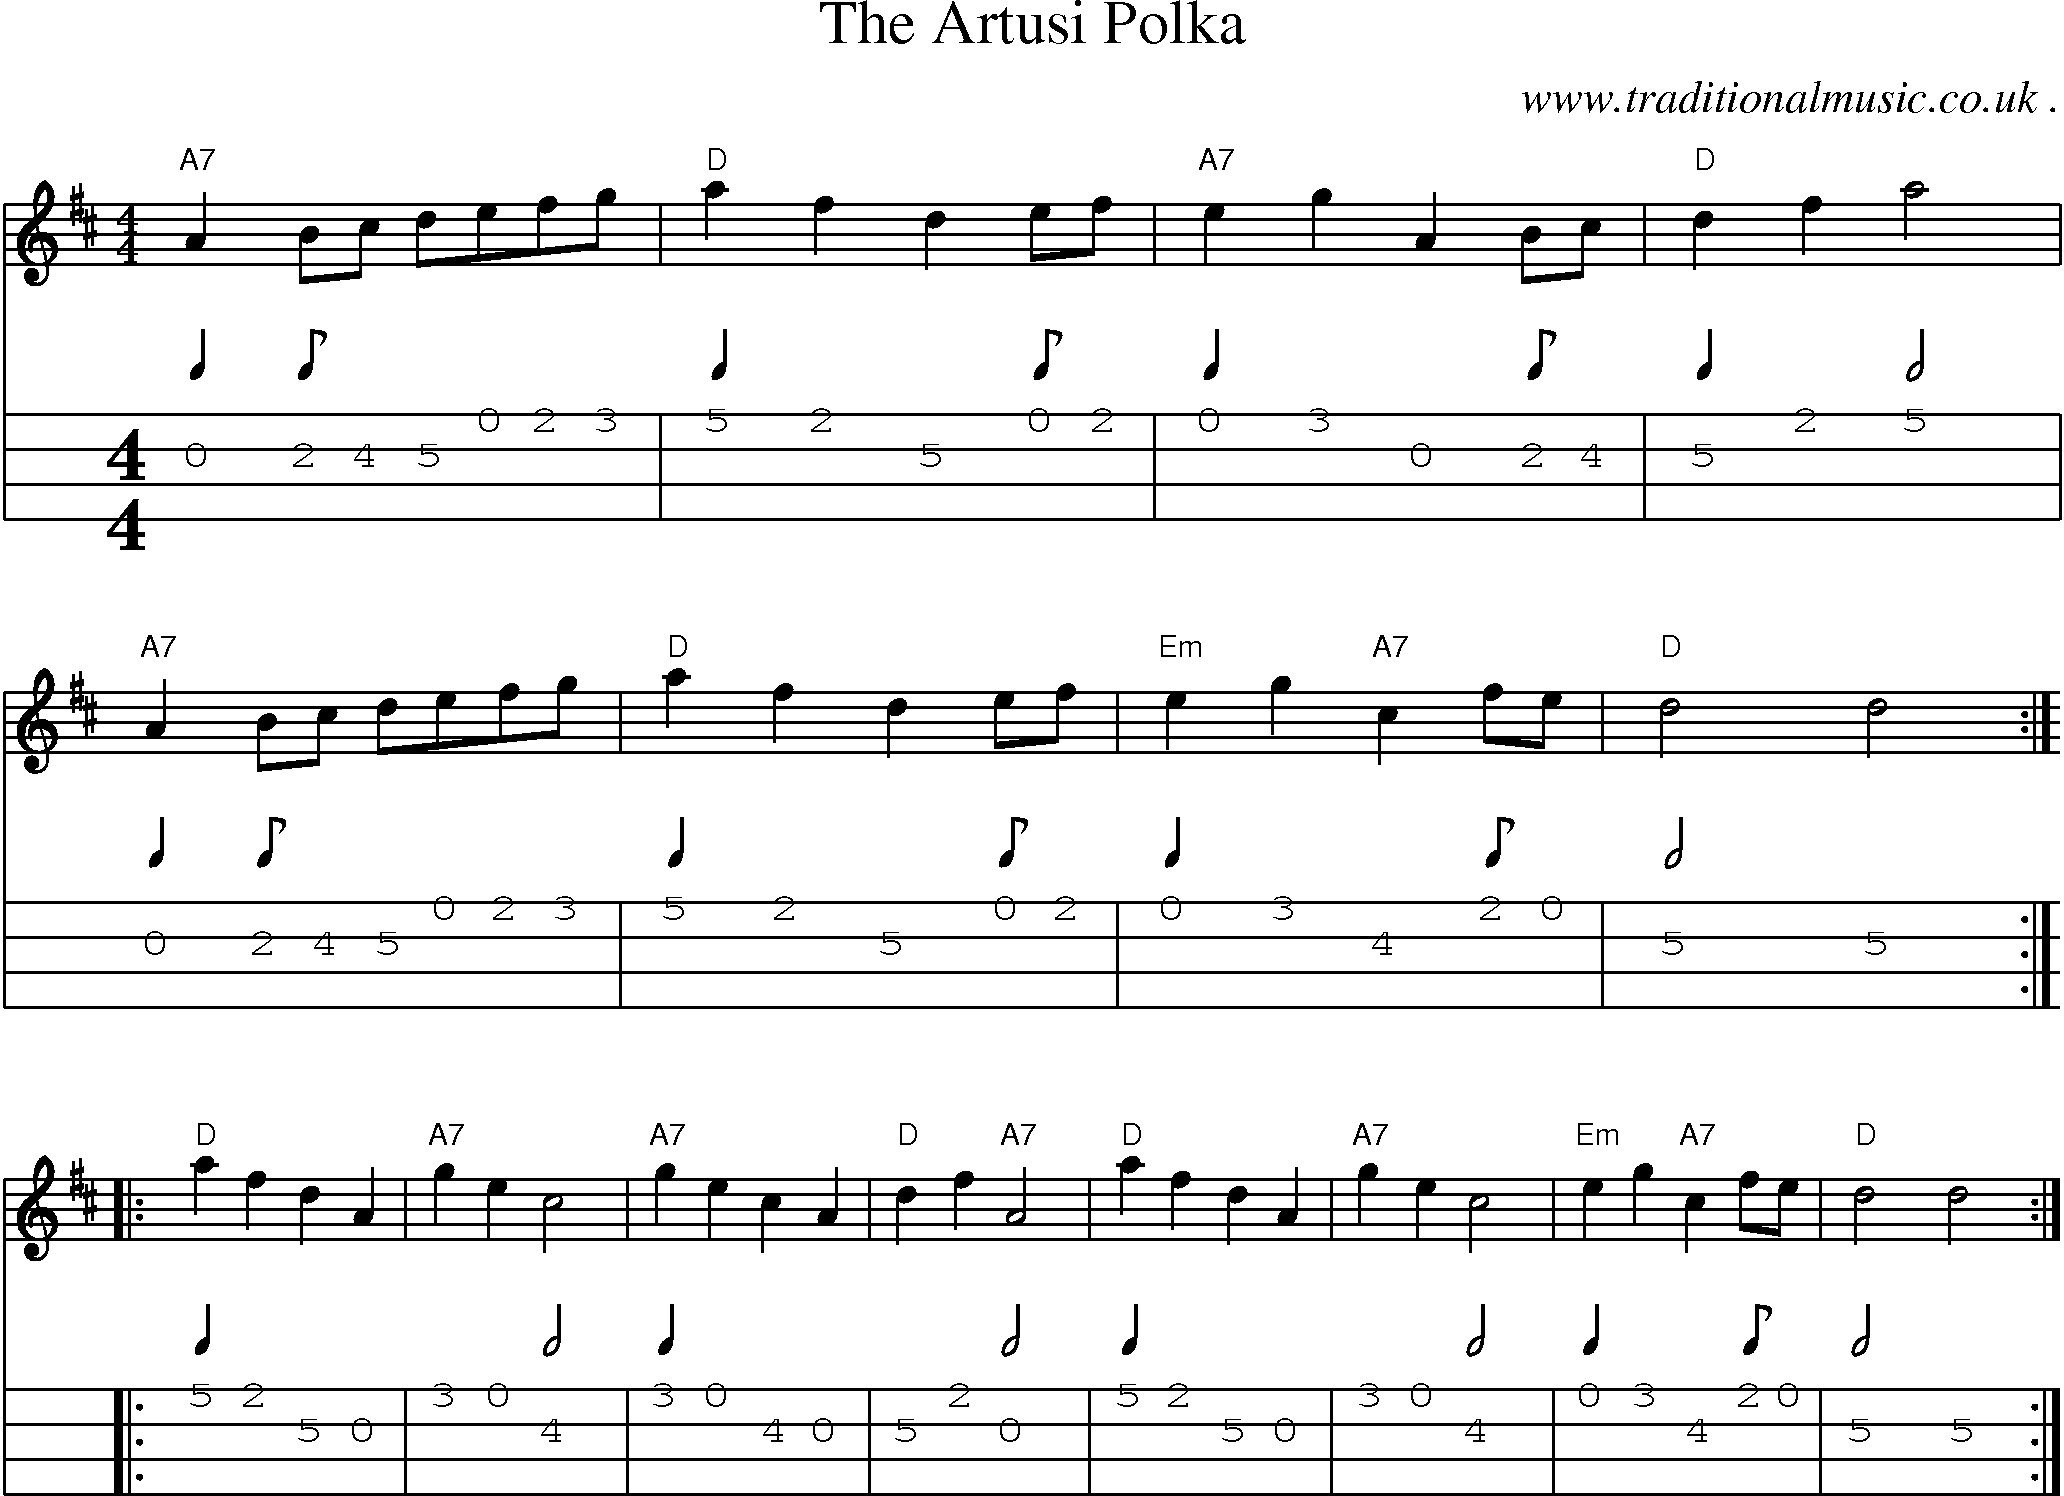 Sheet-Music and Mandolin Tabs for The Artusi Polka